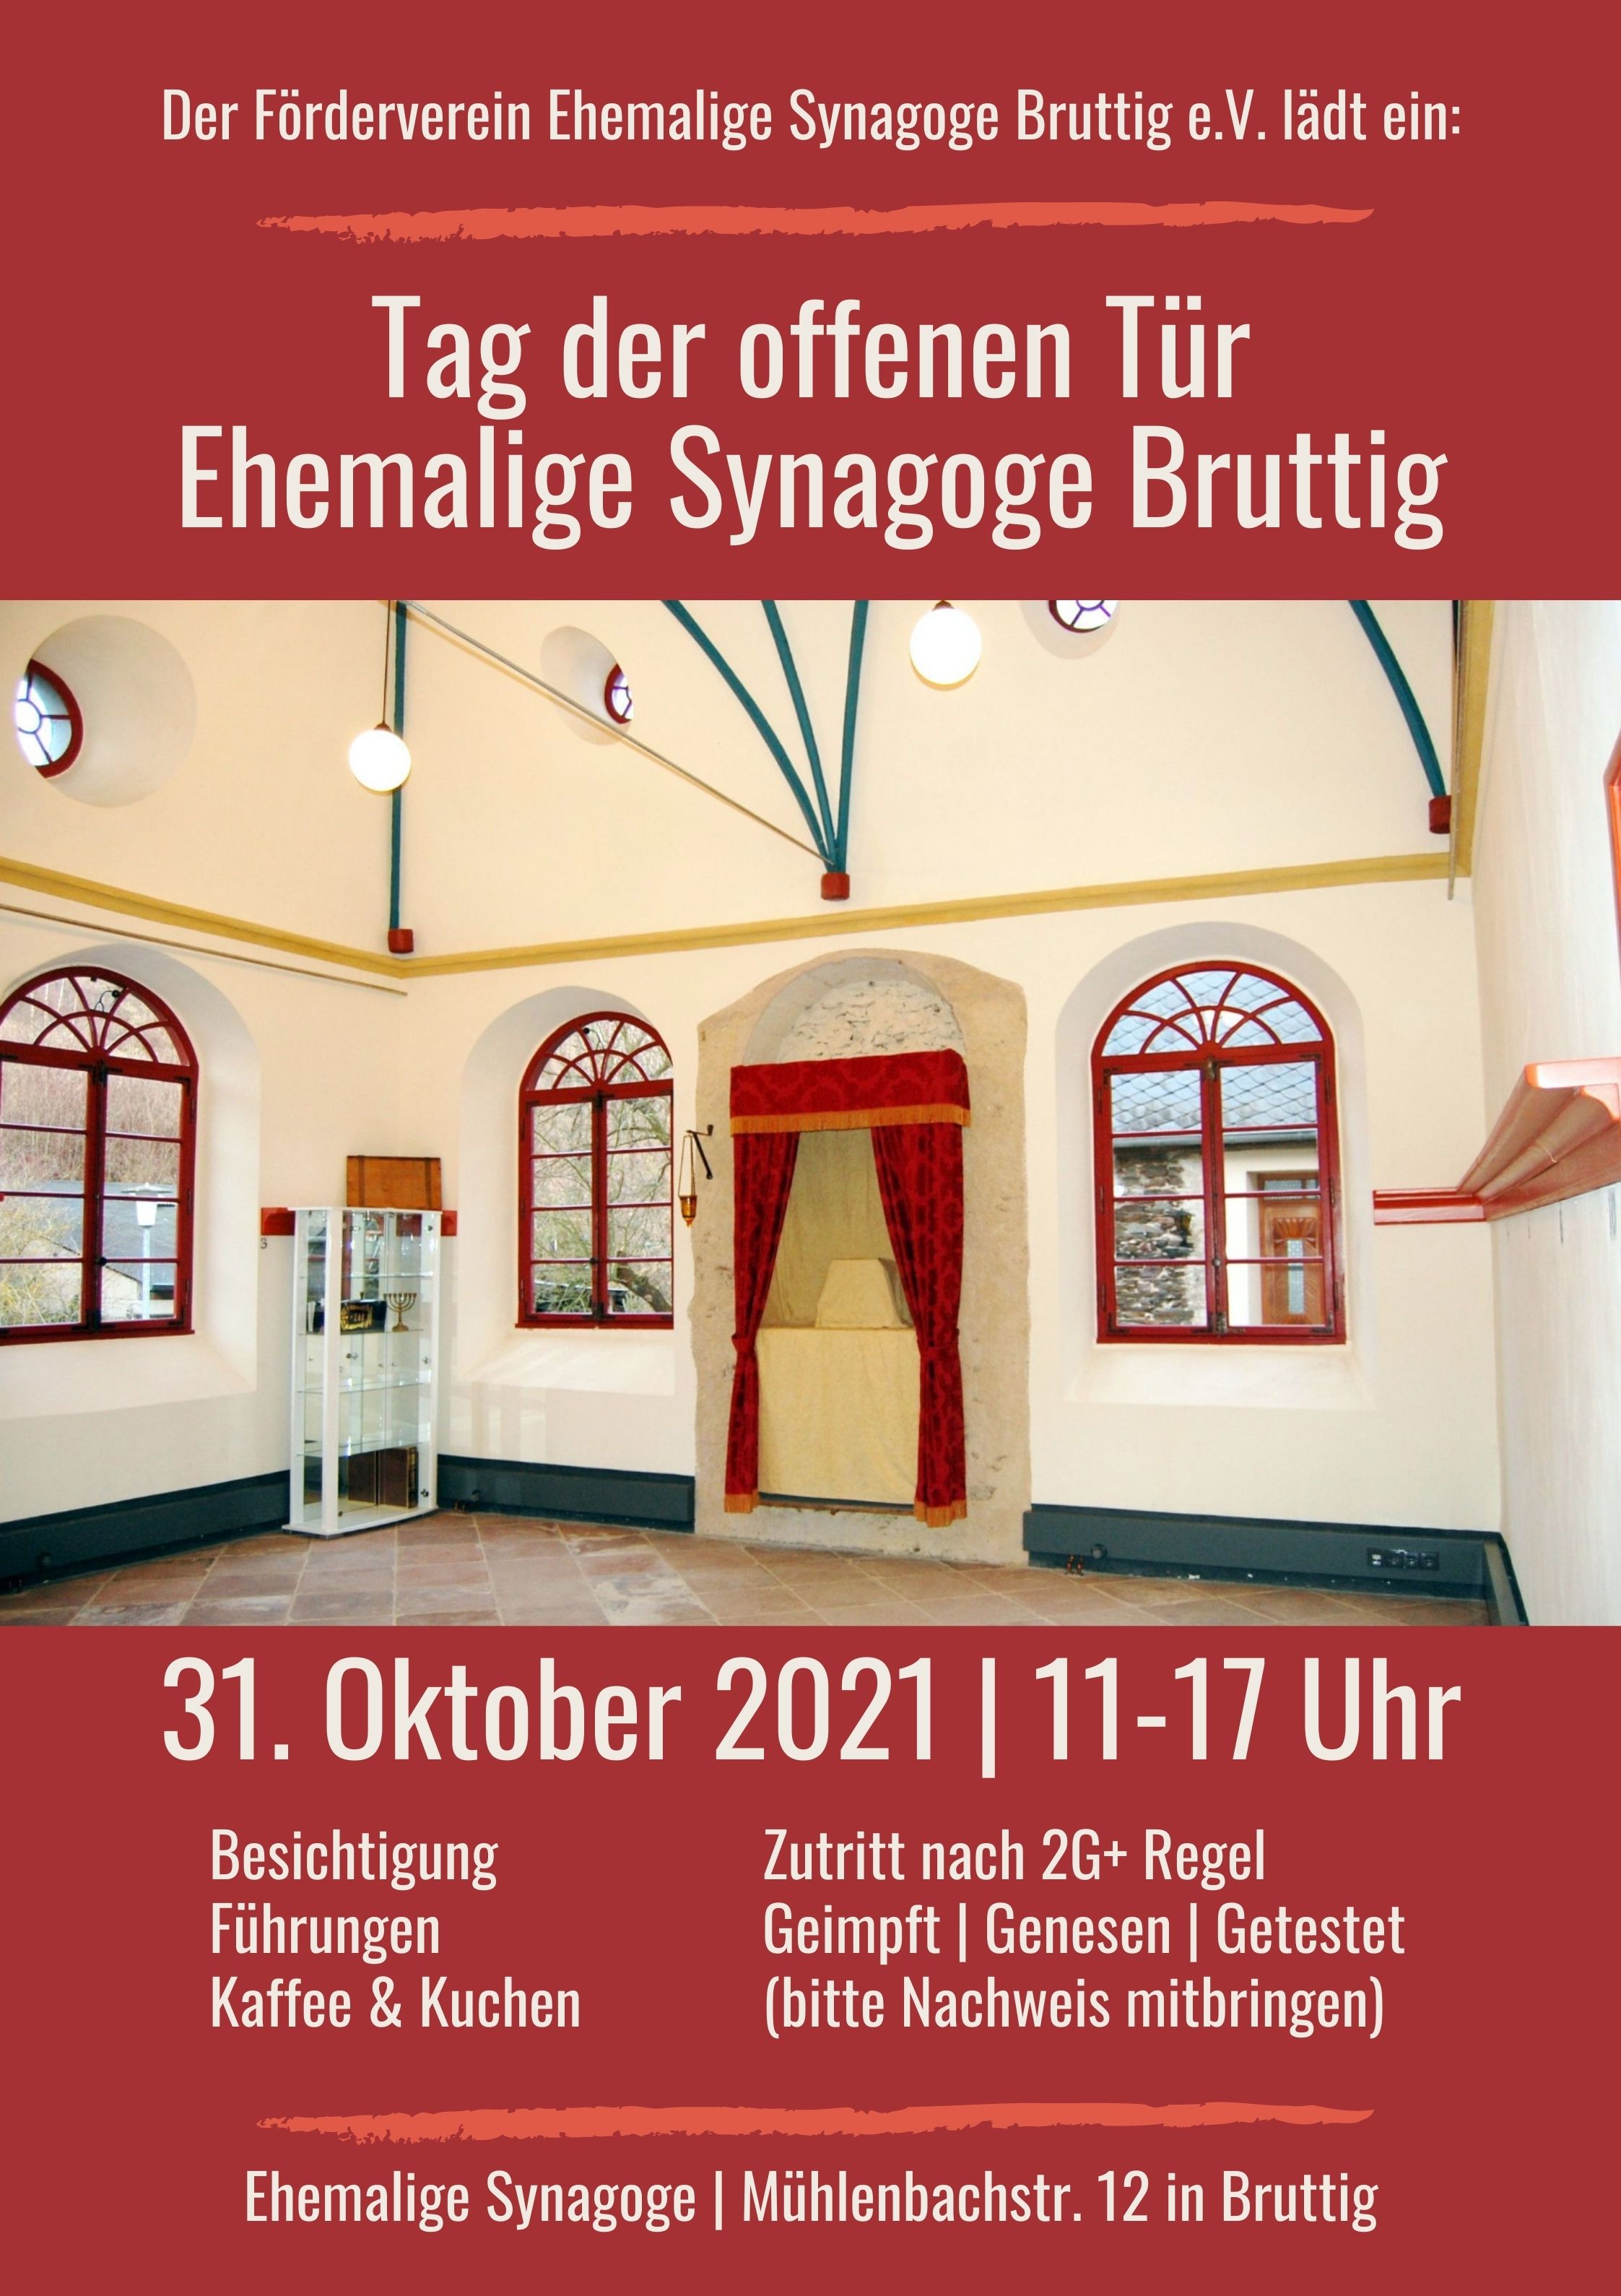 Tag der offenen Tür Ehemalige Synagoge Bruttig 31.10.2021